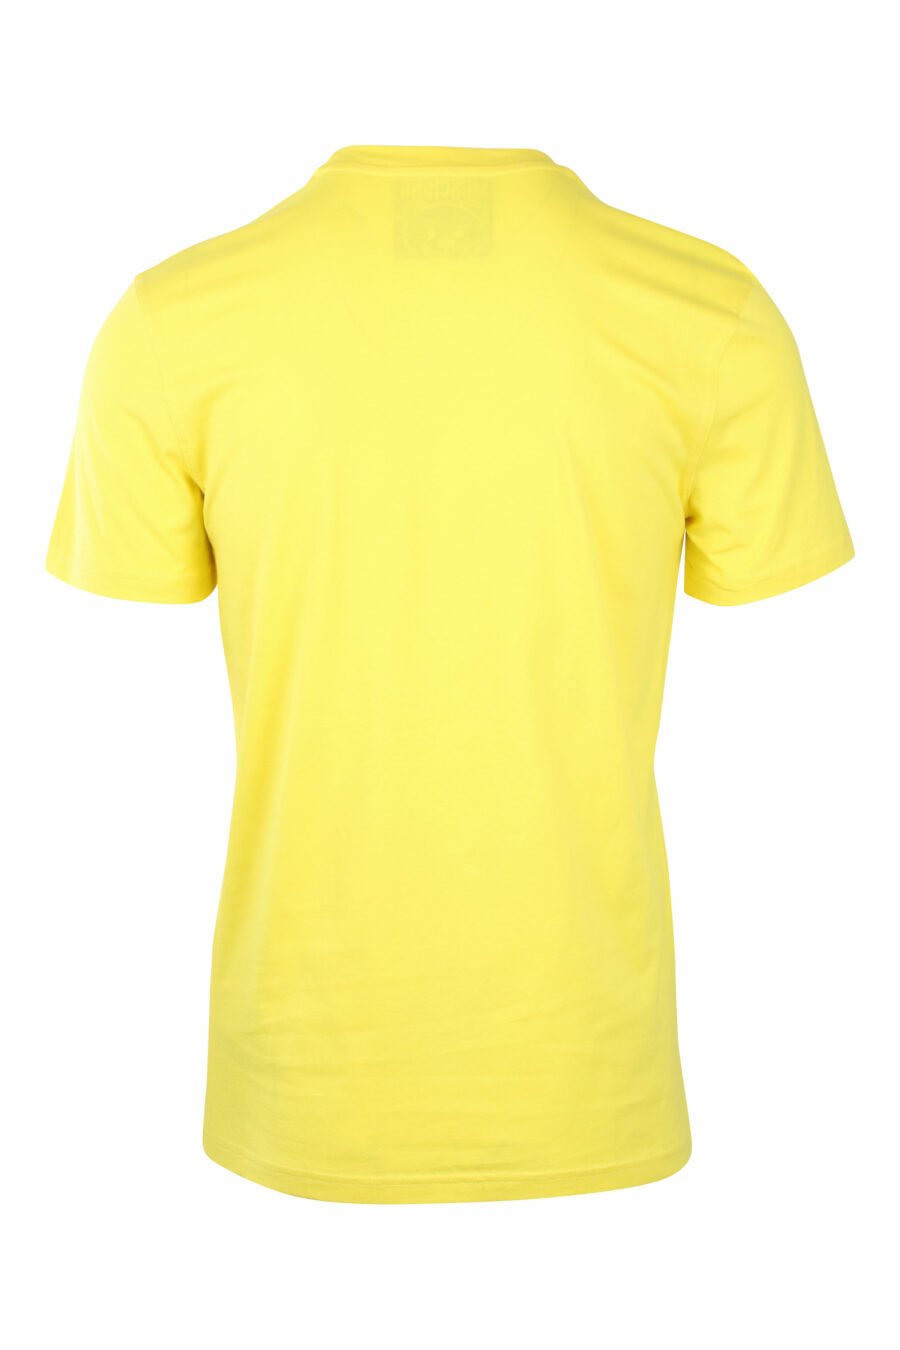 T-shirt amarela com minilogo de urso monocromático - IMG 1409